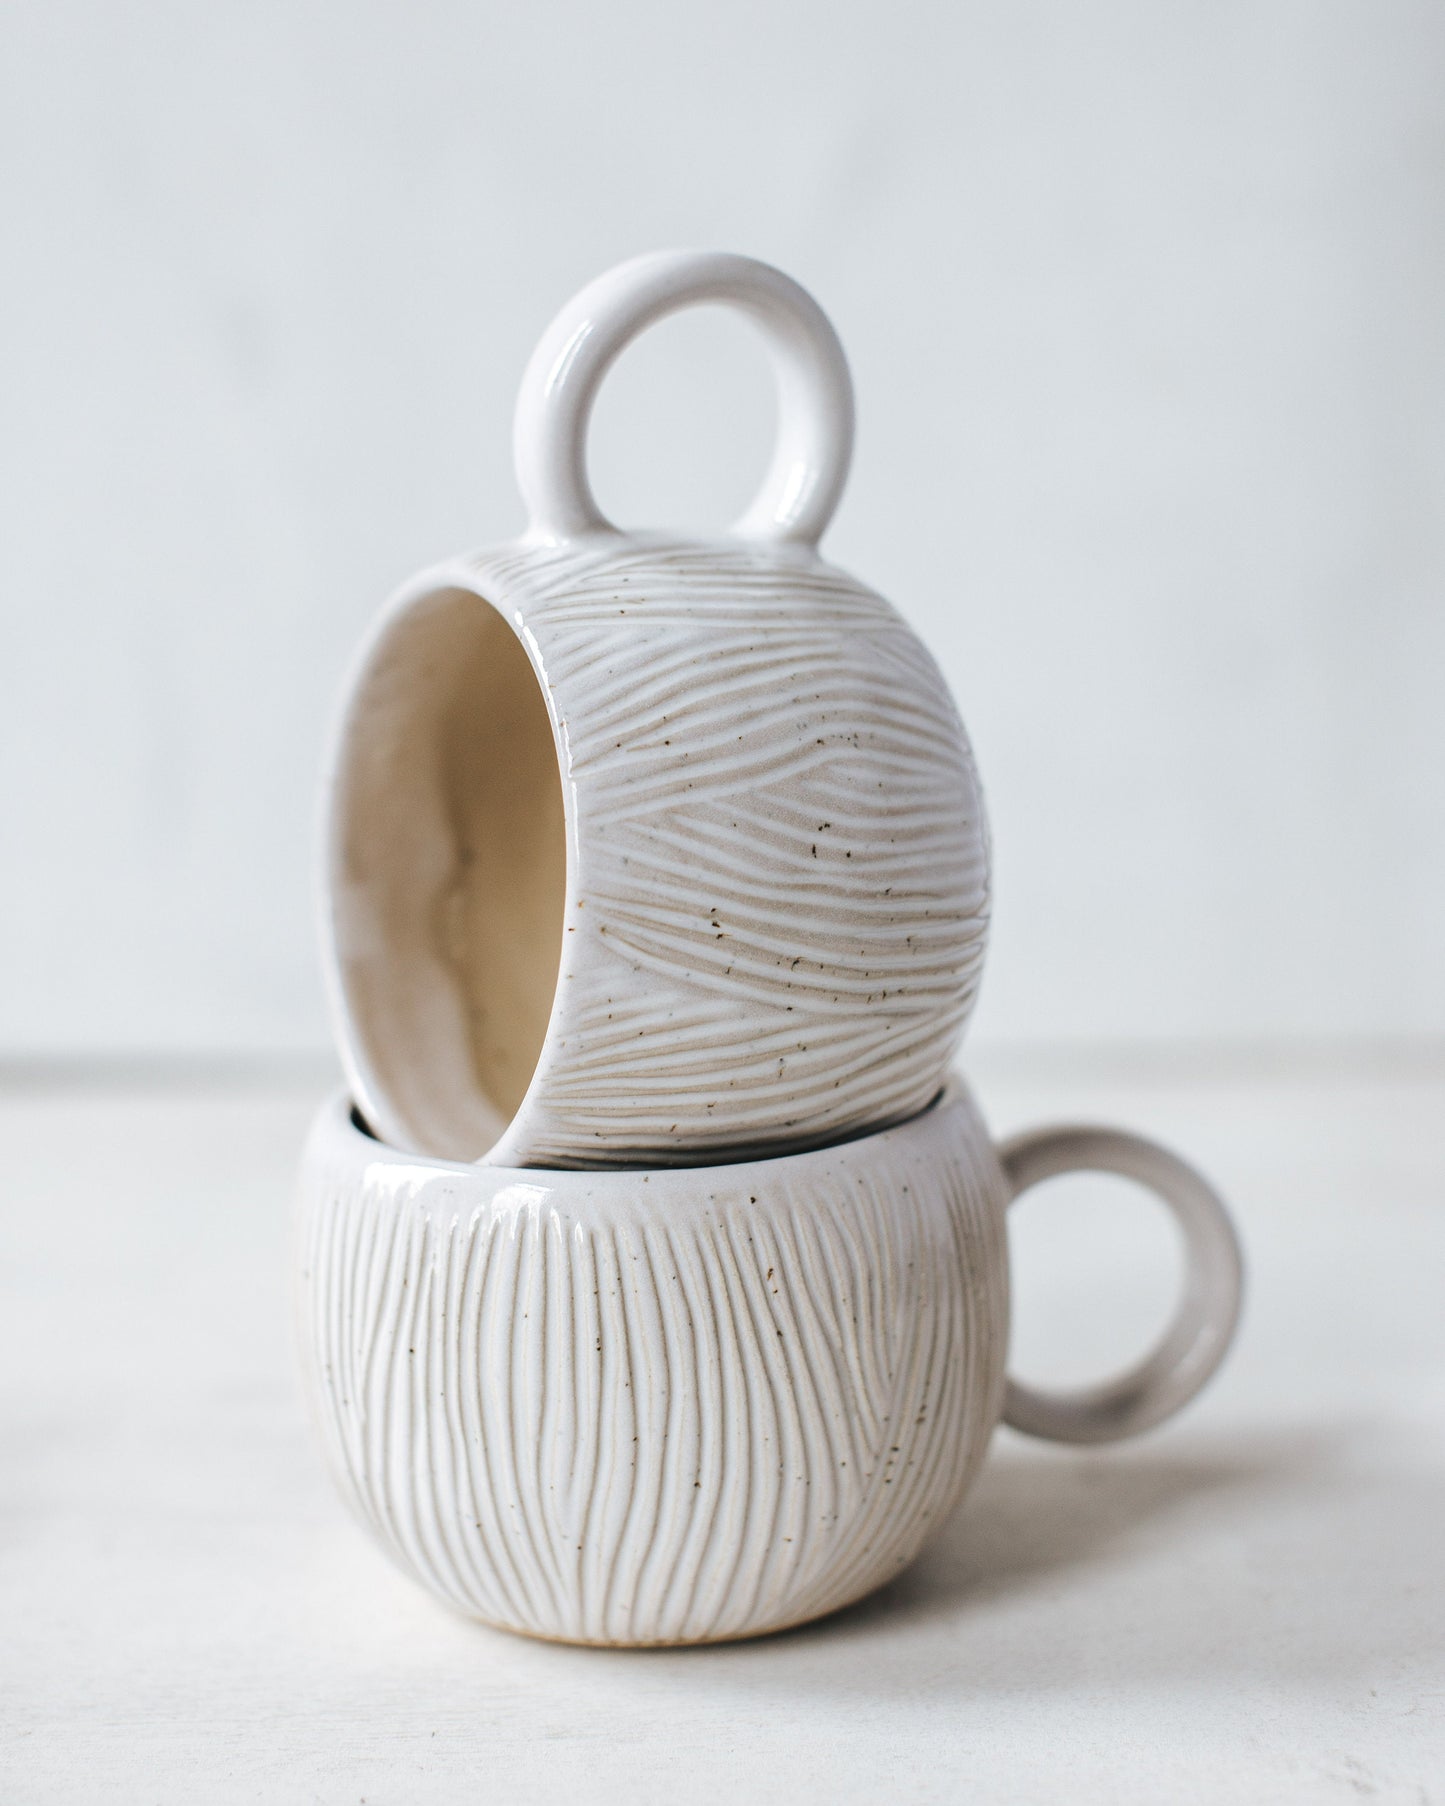 Arctic cup – Merenok ceramics and pottery tools